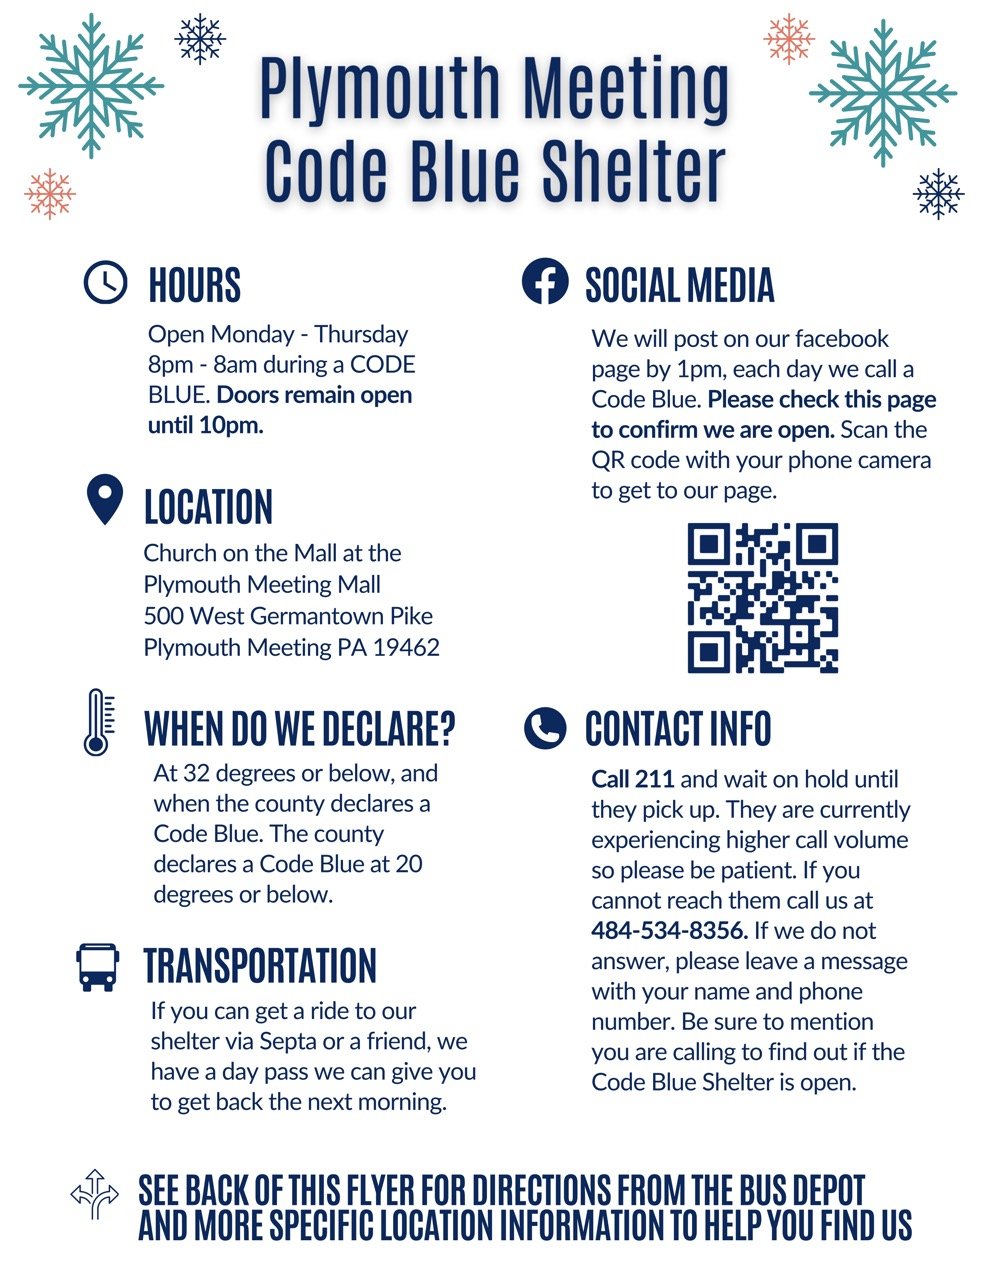 Code Blue Shelter Flyer 2 Large.jpeg